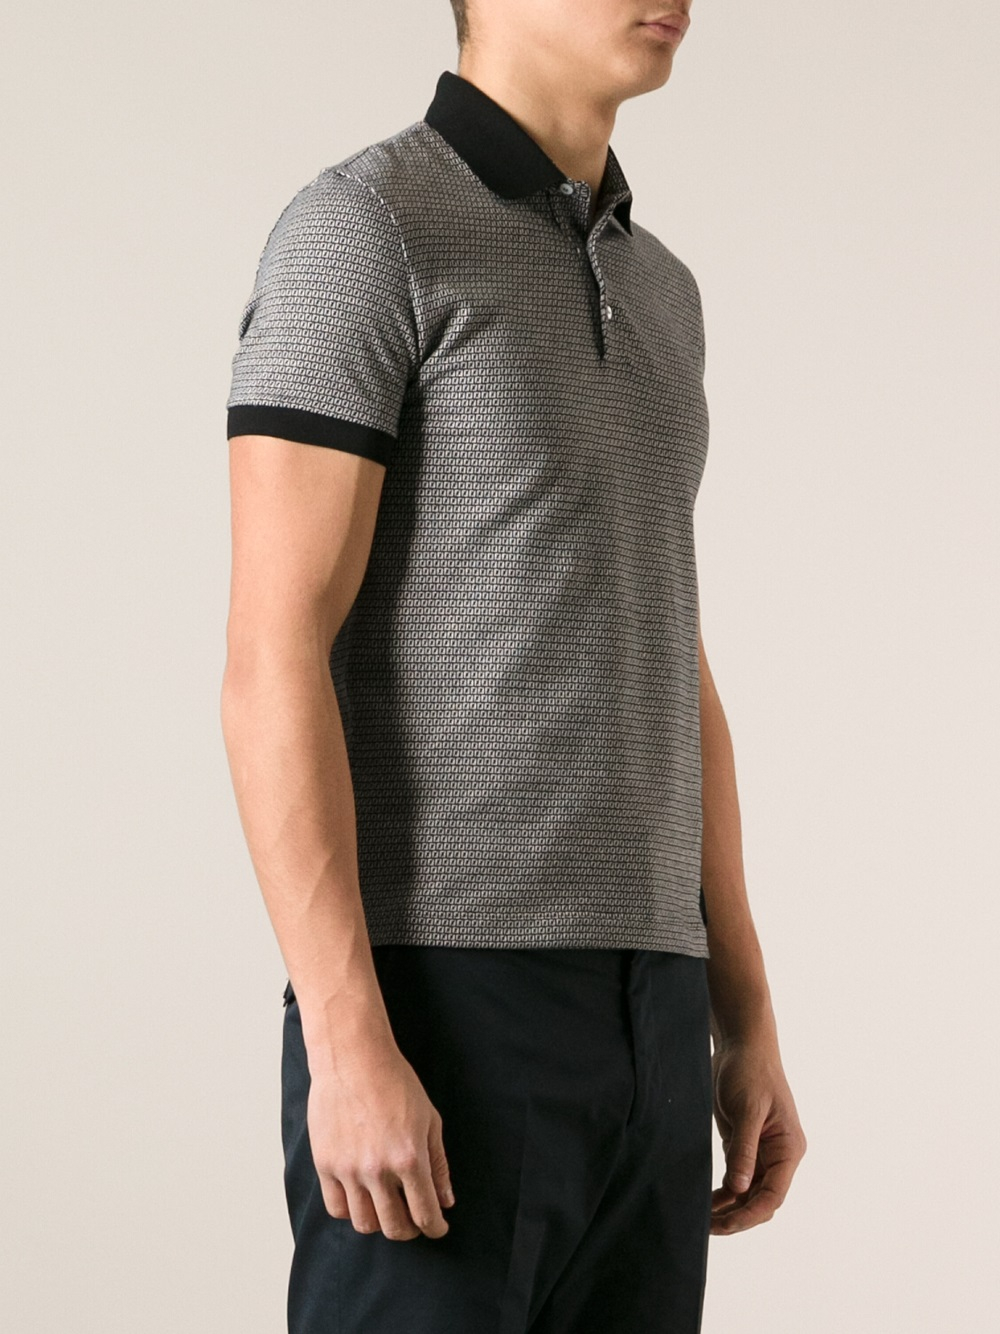 Lyst - Fendi Monogram Print Polo Shirt in Black for Men